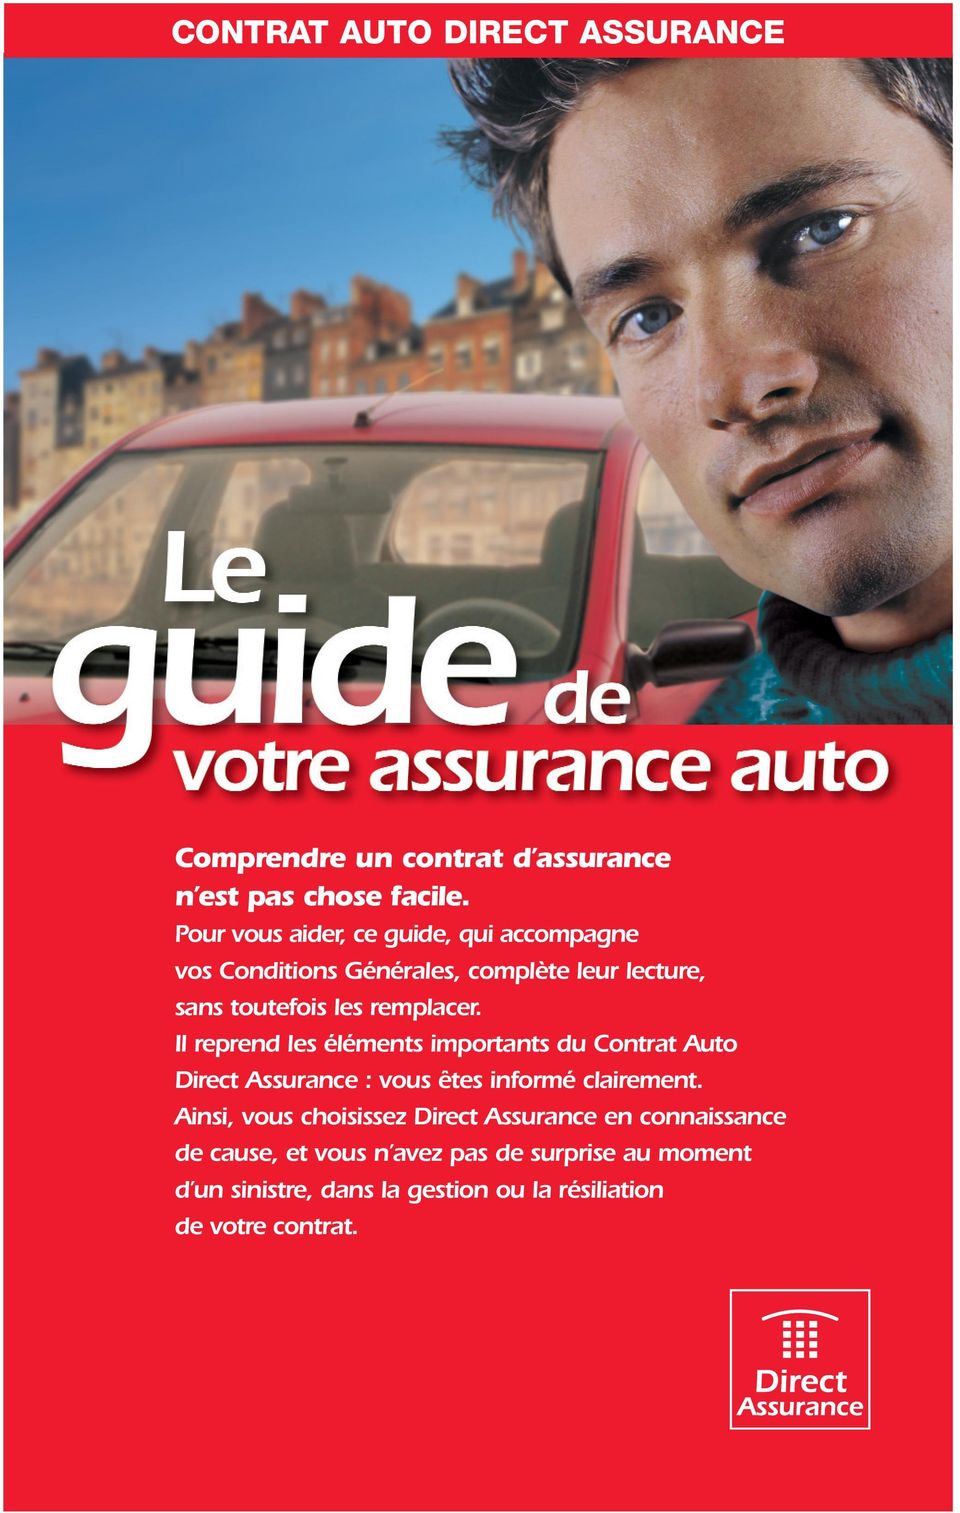 Il reprend les éléments importants du Contrat Auto Direct Assurance : vous êtes informé clairement.